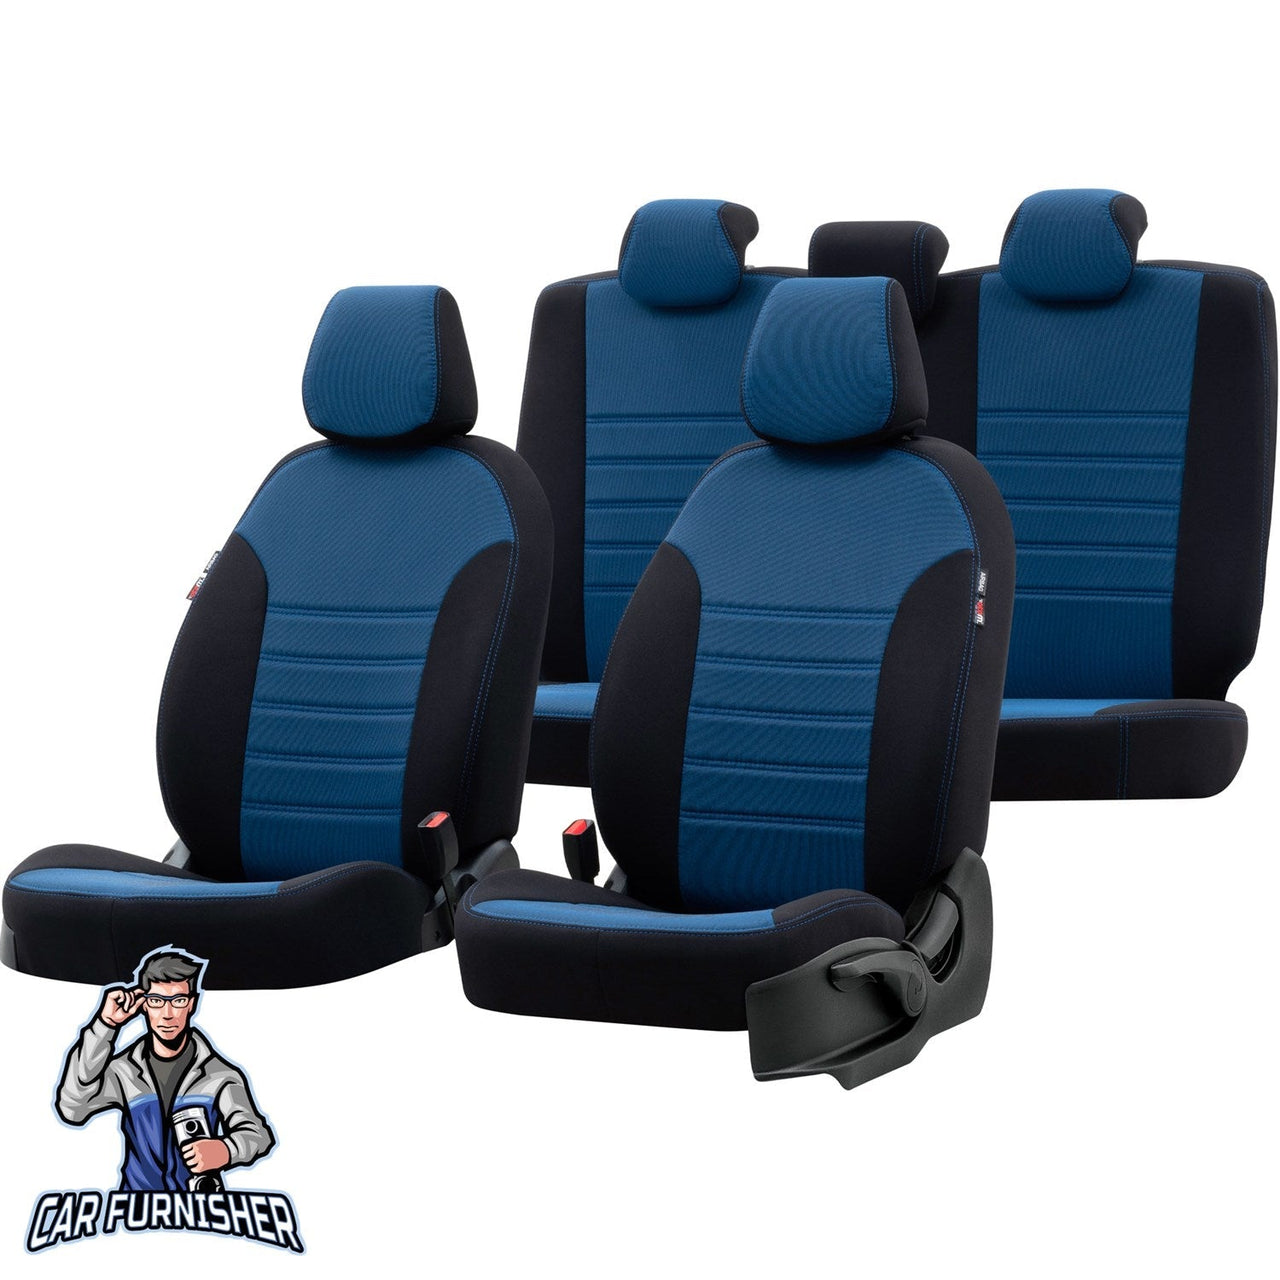 Skoda Citigo Seat Covers Original Jacquard Design Blue Jacquard Fabric